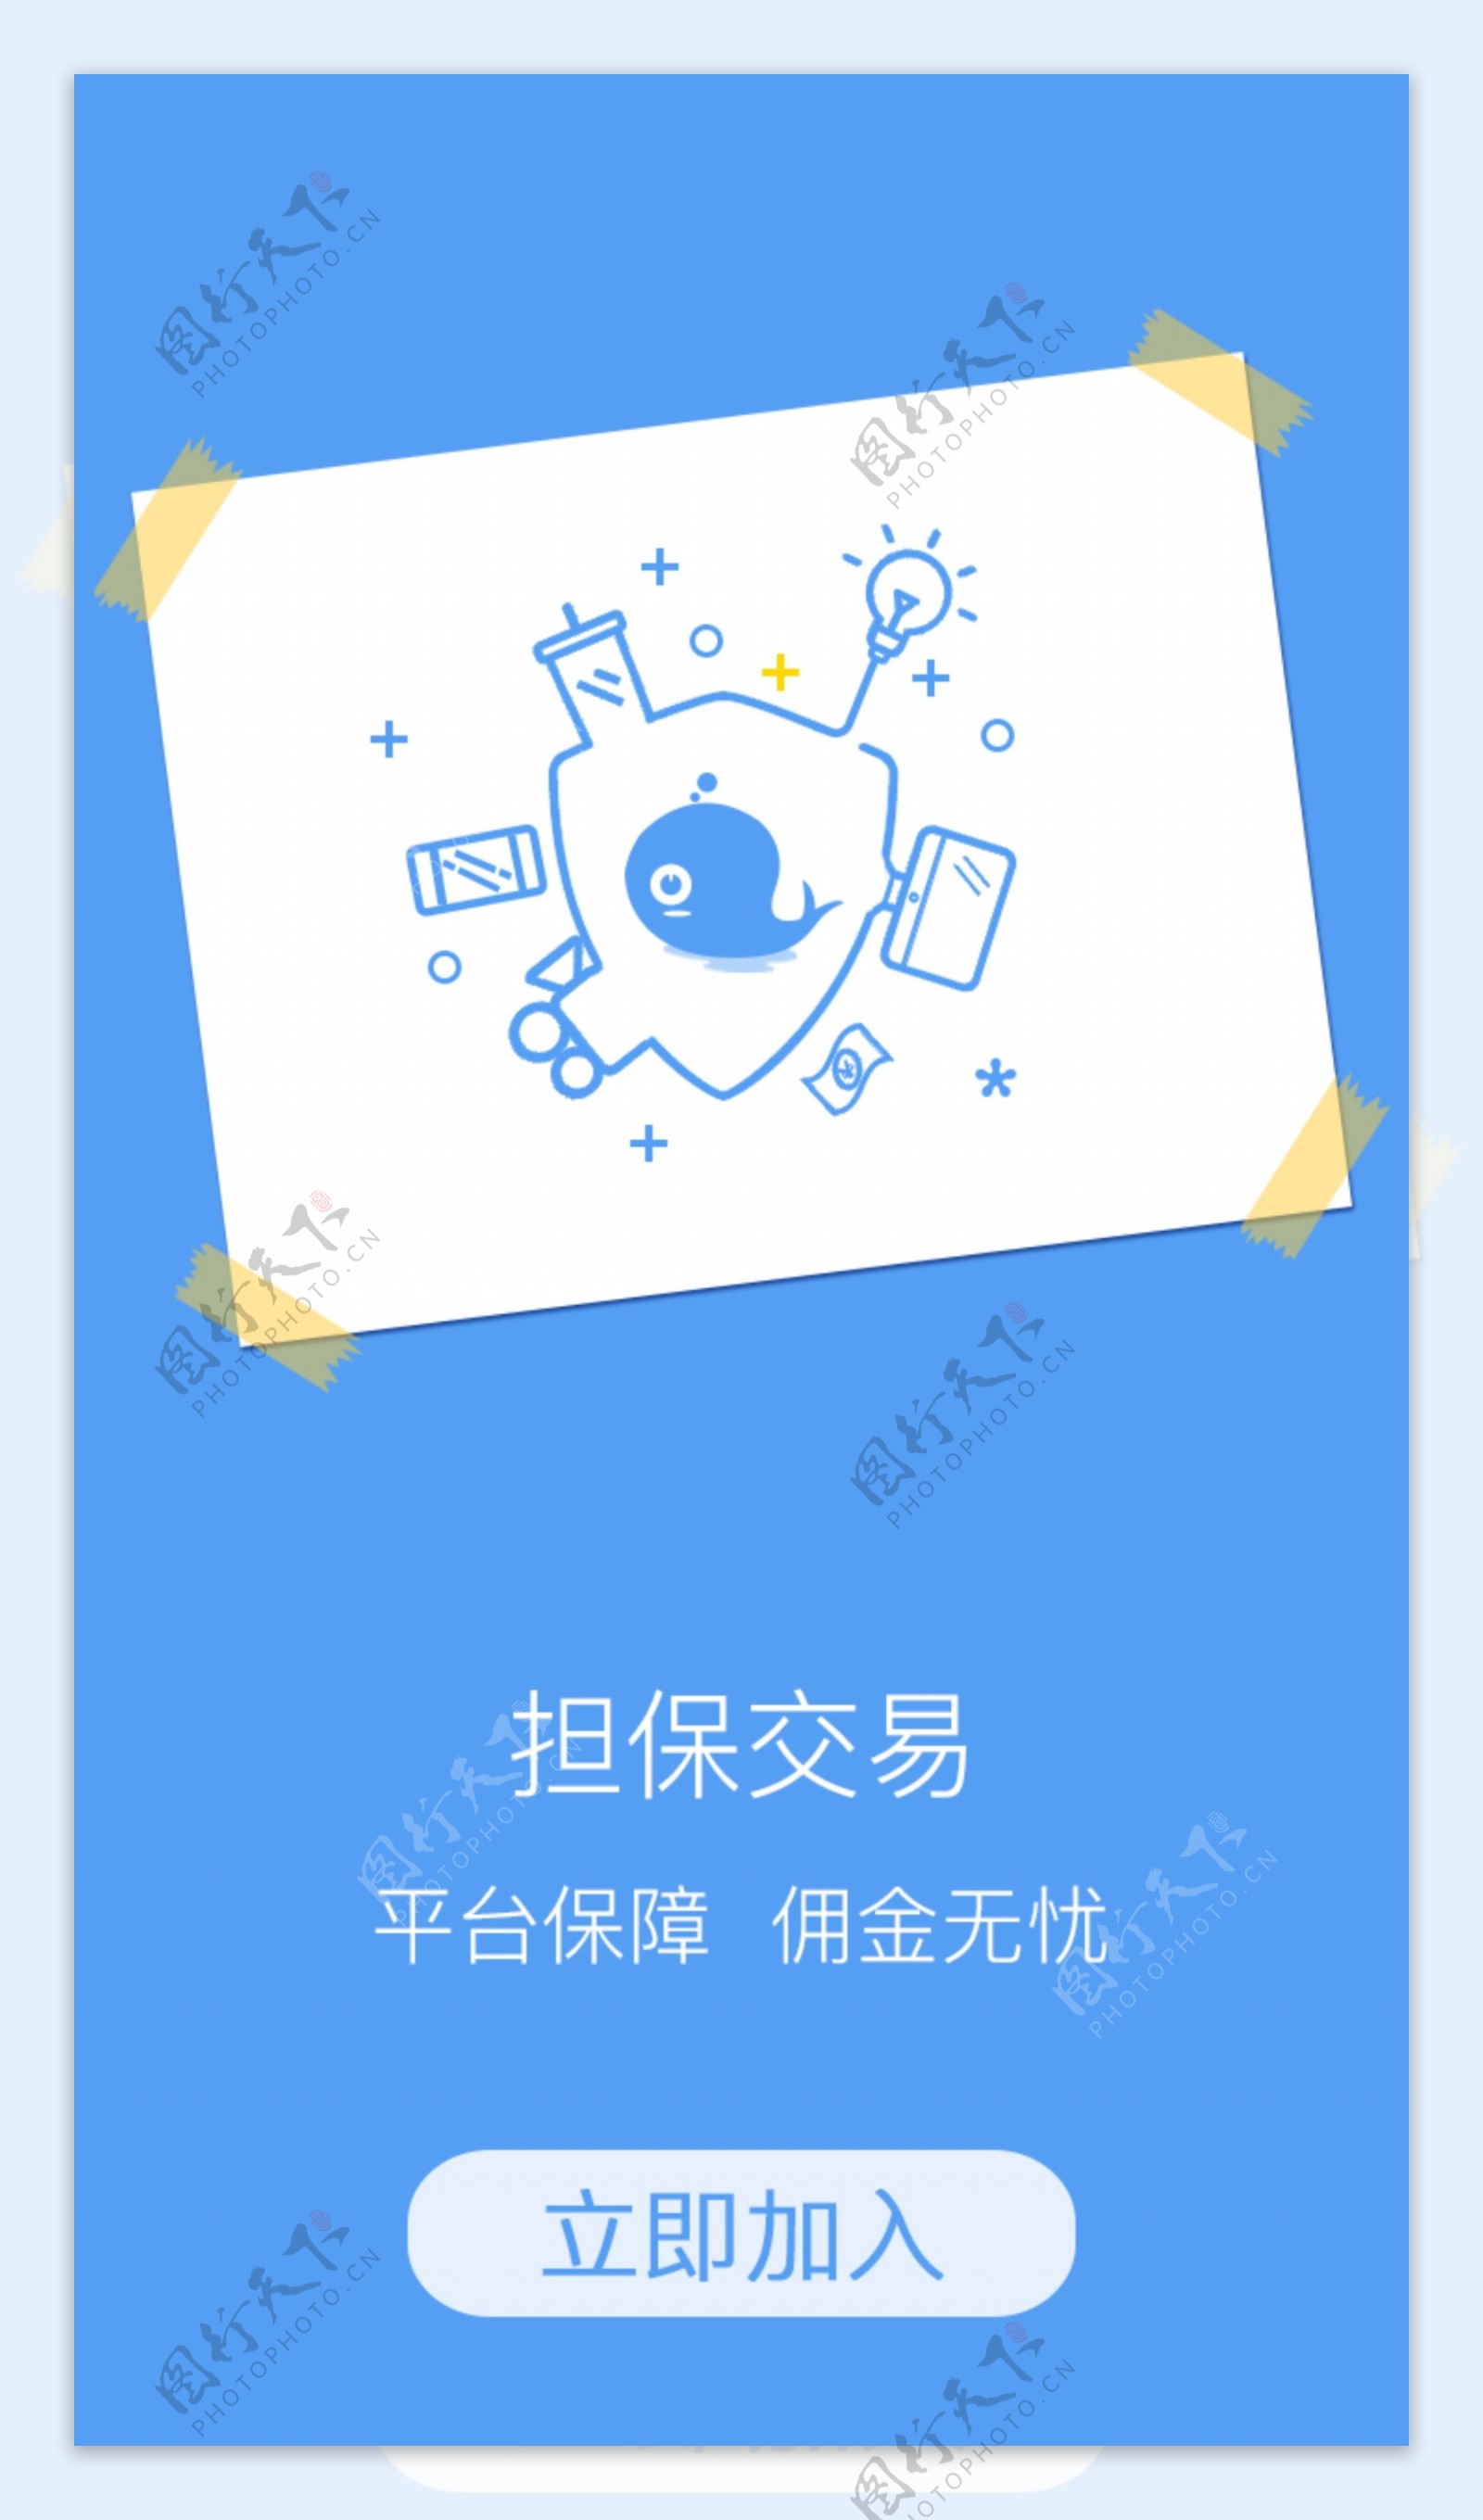 app蓝引导欢迎页闪屏MBE鲸鱼V米兼职